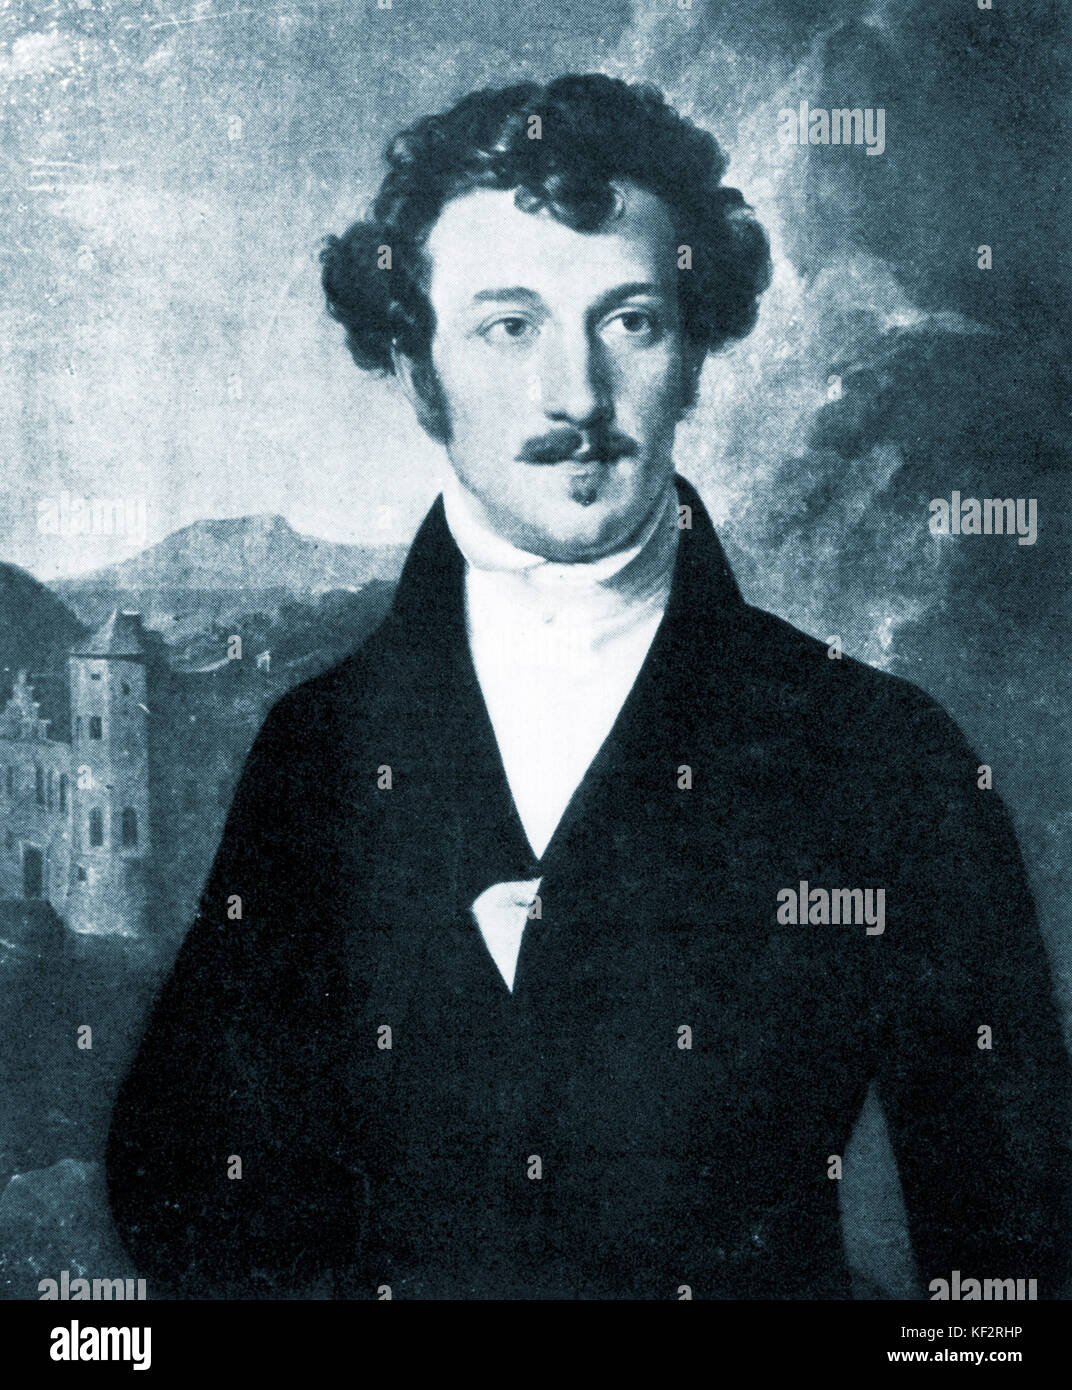 Franz von Schober - Ritratto di tedesco lo scrittore e poeta, 17 maggio 1798 - 13 settembre 1882 - il più vicino di tutti Schubert amici Foto Stock